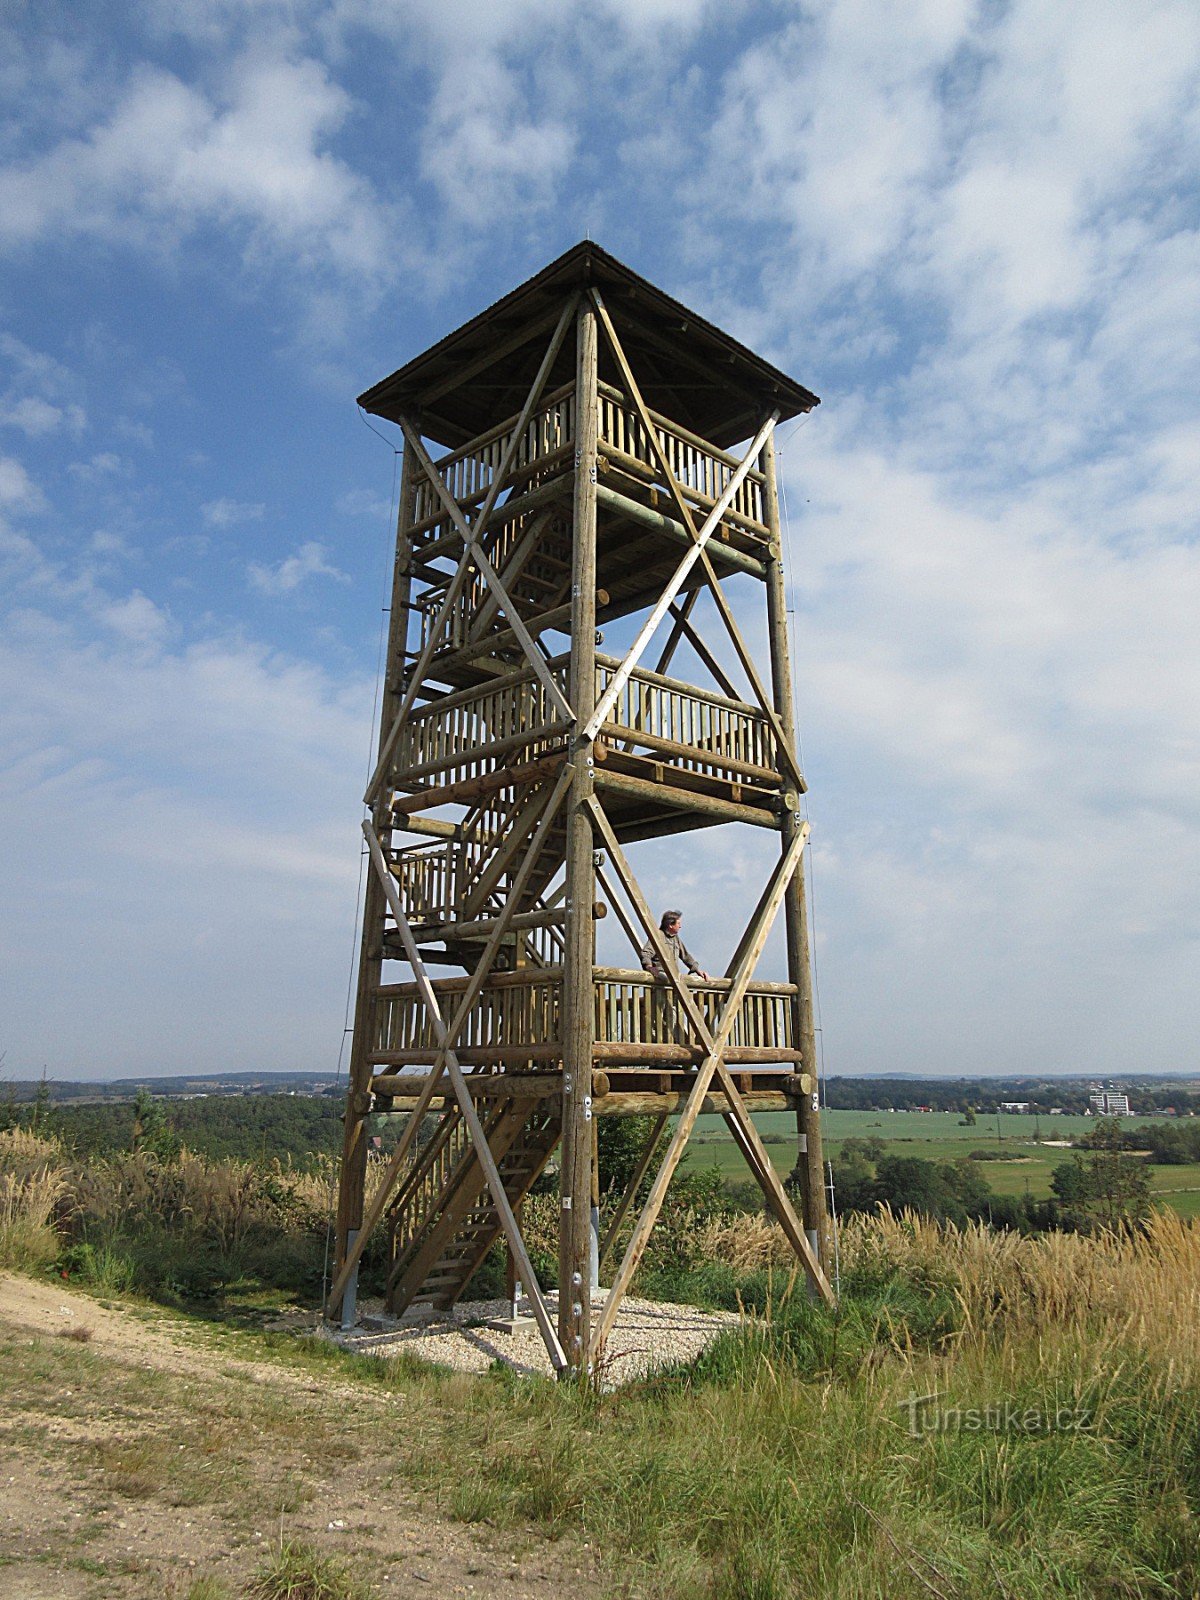 Svákov - tháp quan sát, lâu đài, nhà nguyện